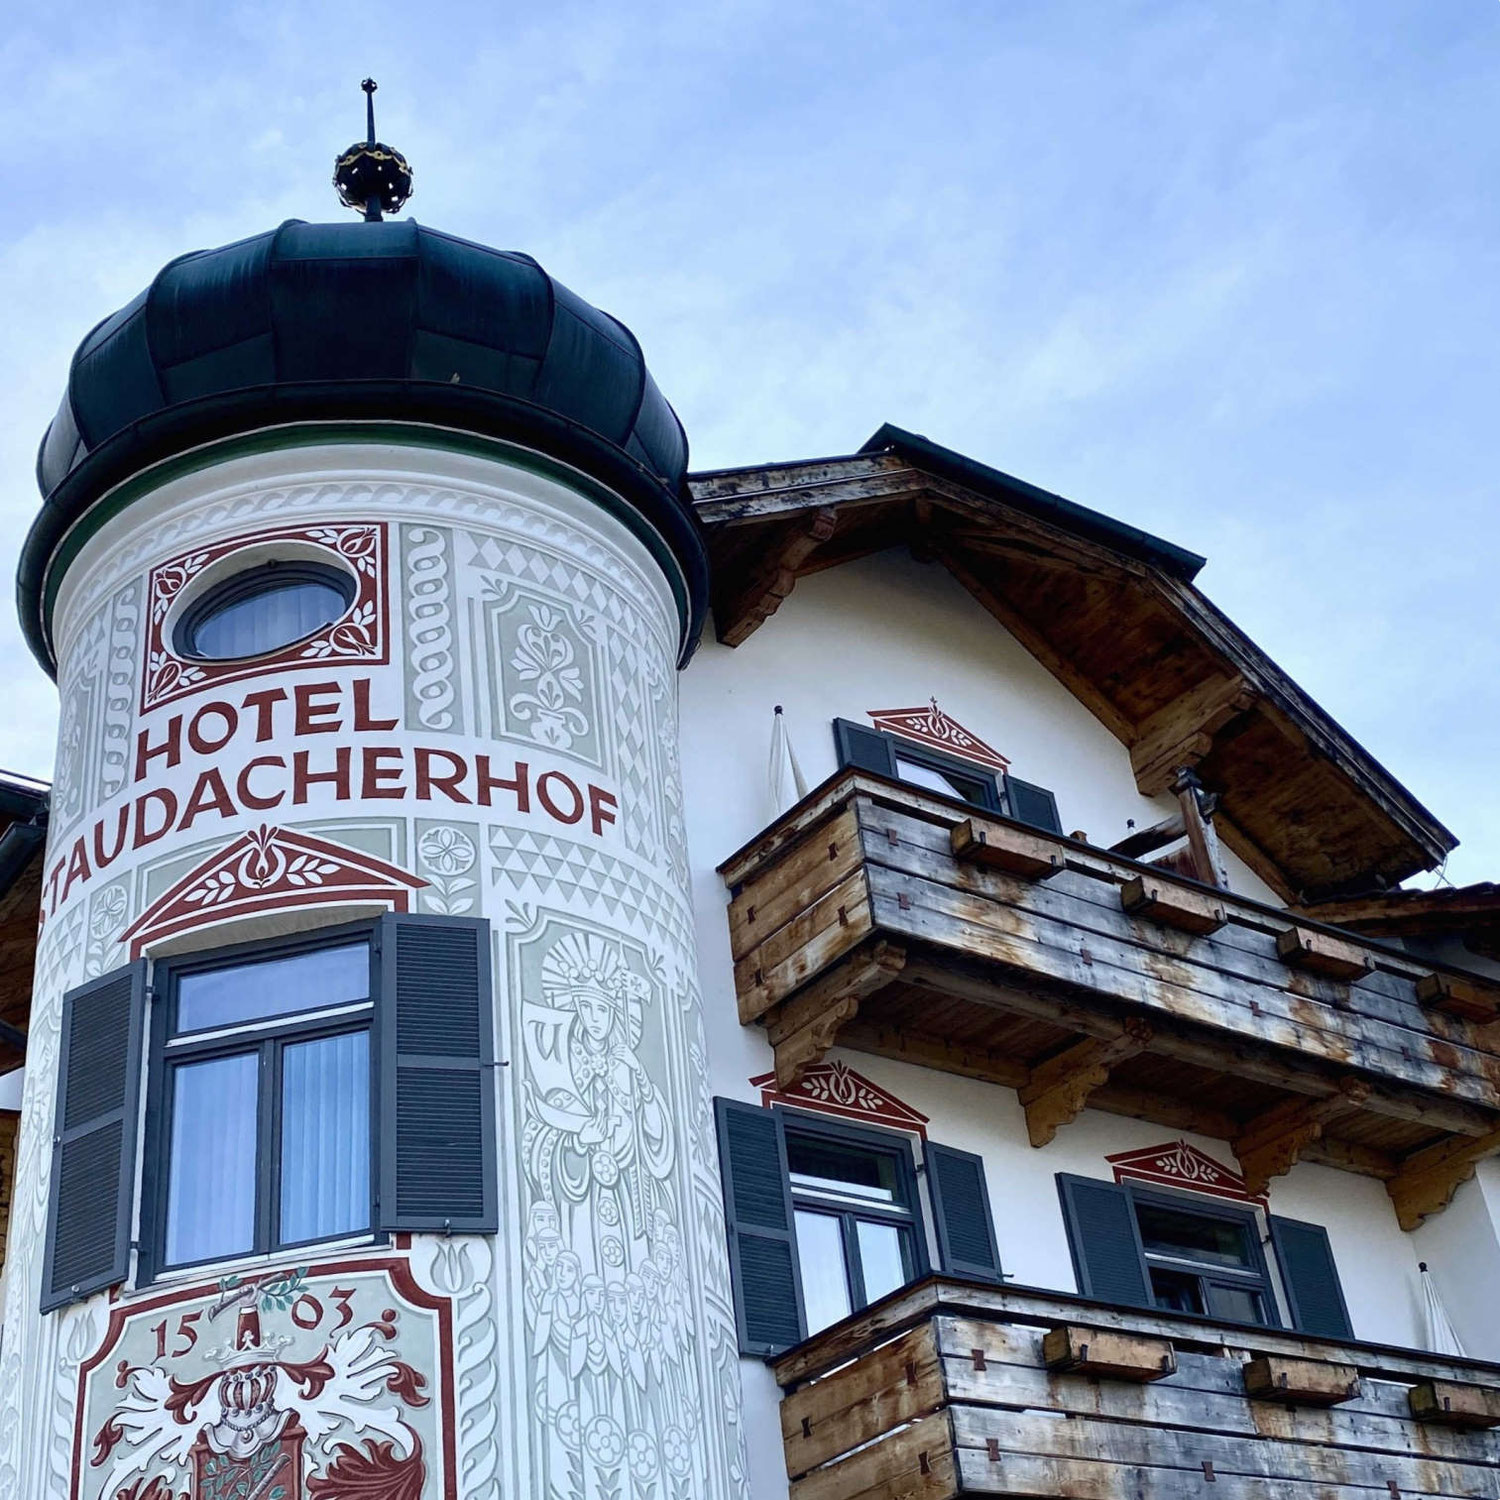 HOTEL STAUDACHERHOF - BUNTE BEGEGNUNGEN UNTER DER ZUGSPITZE IN BAYERN